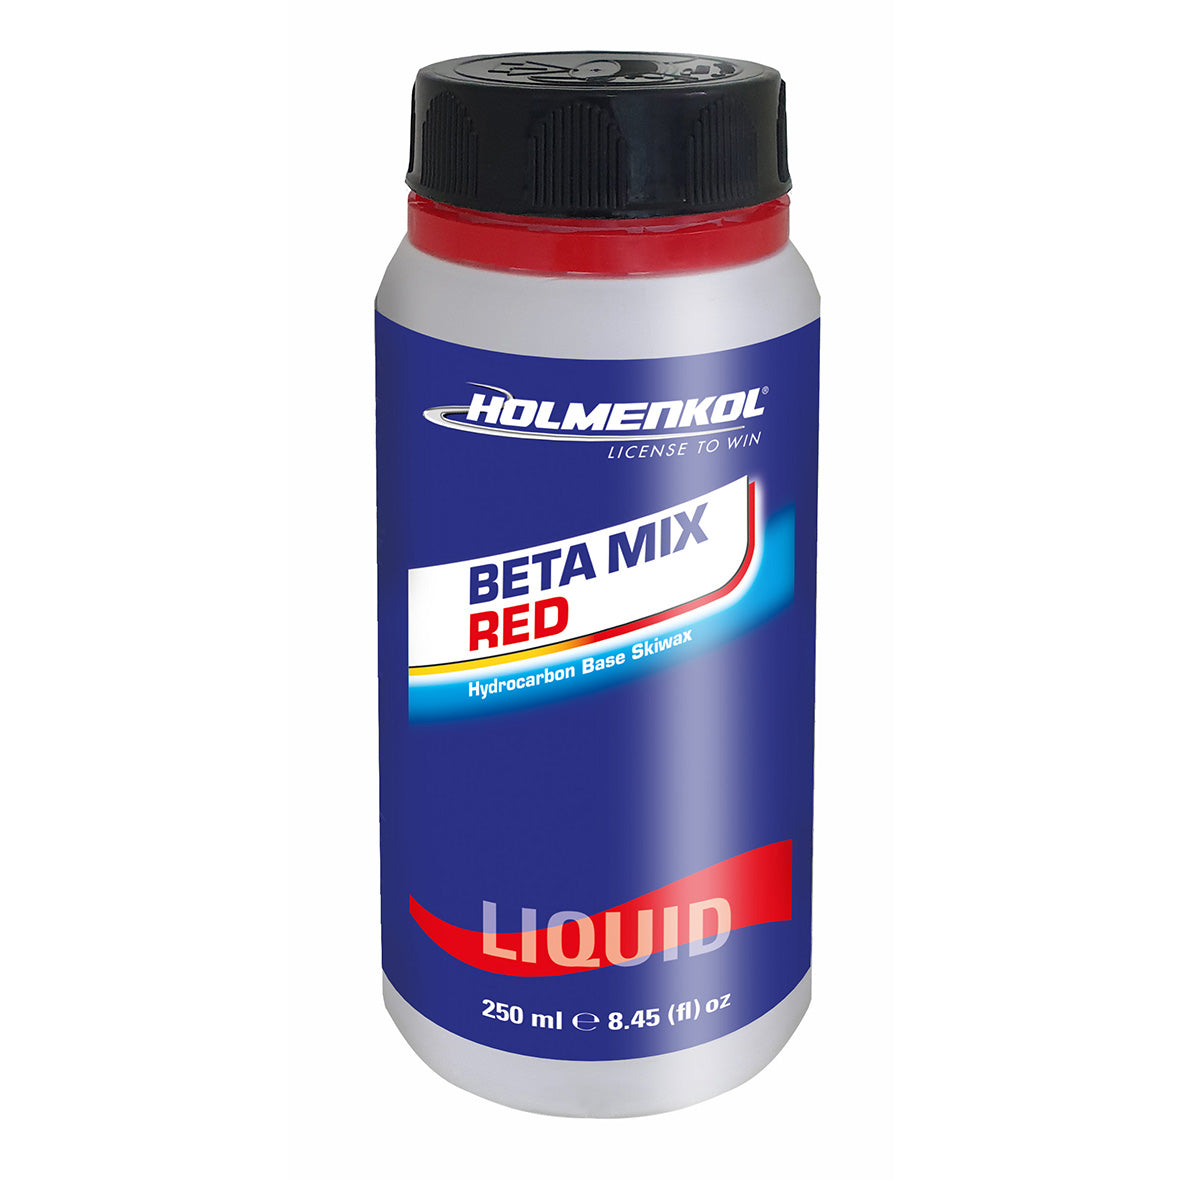 Holmenkol Beta Mix Red liquid 250ml